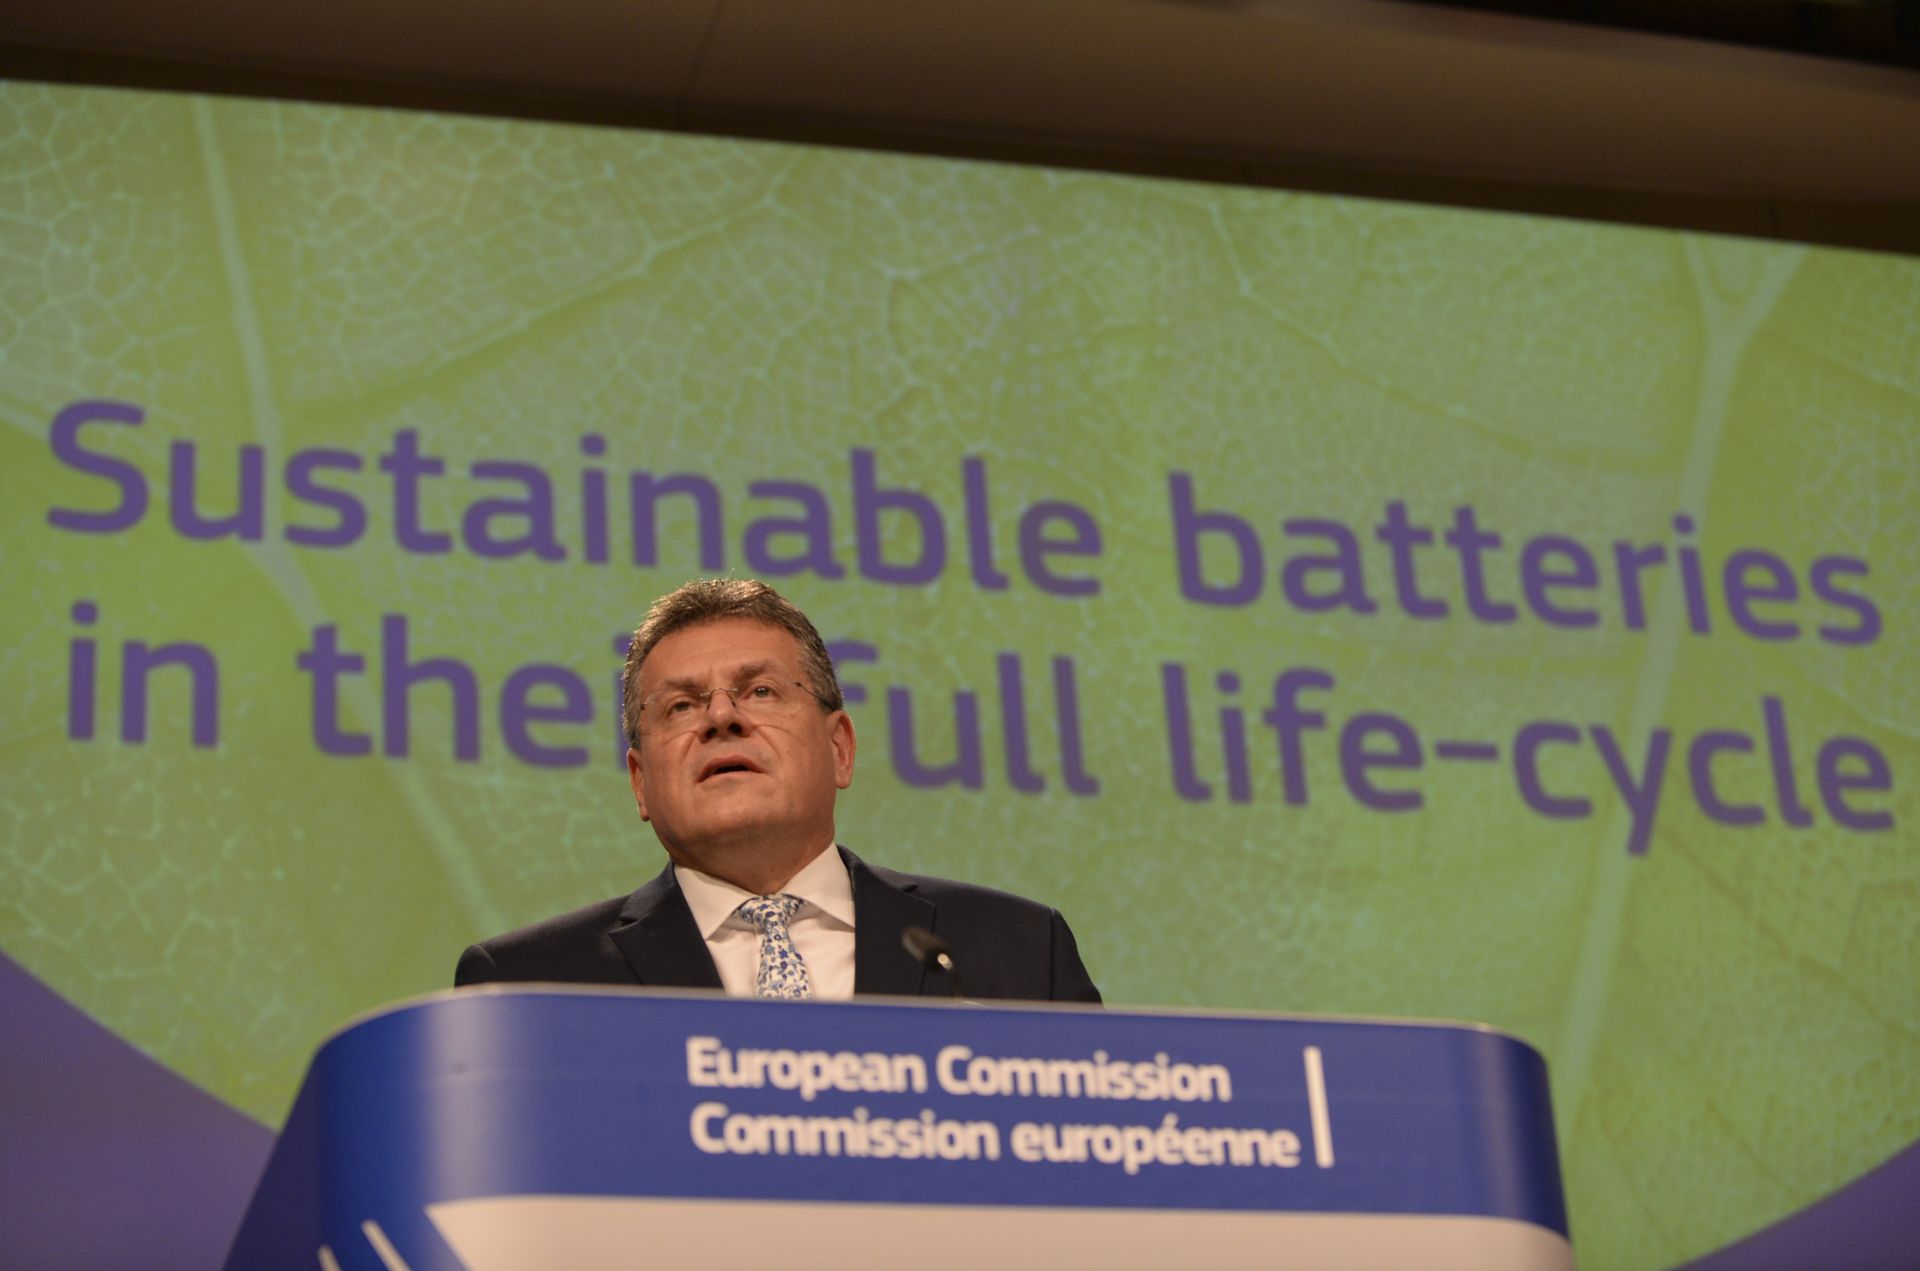 Заместник-председателят на Европейската комисия Марош Шефчович говори по време на конференция относно устойчивостта на батериите в централата на ЕС в Брюксел 